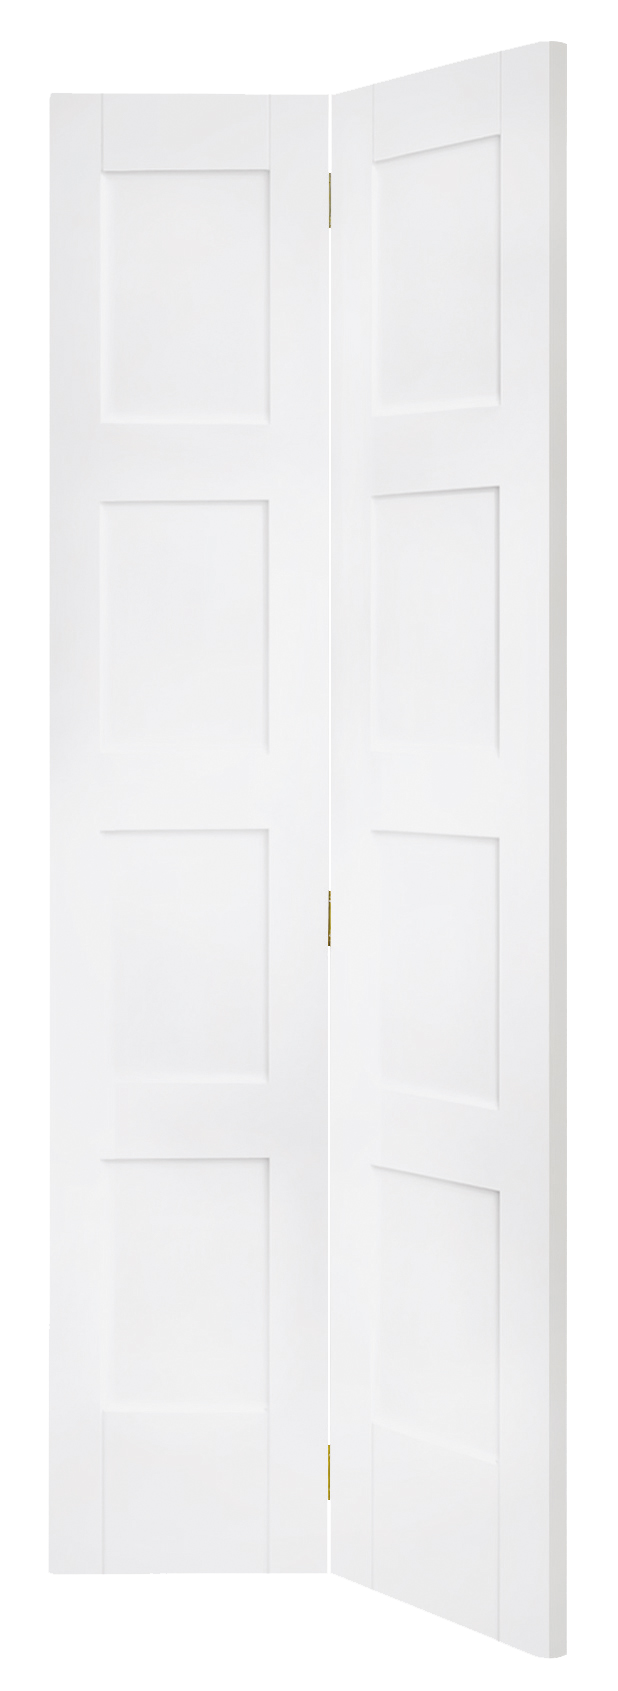 Shaker 4 Panel Bi-Fold Internal White Primed Door – White Primed, 1981 x 762 x 35 mm